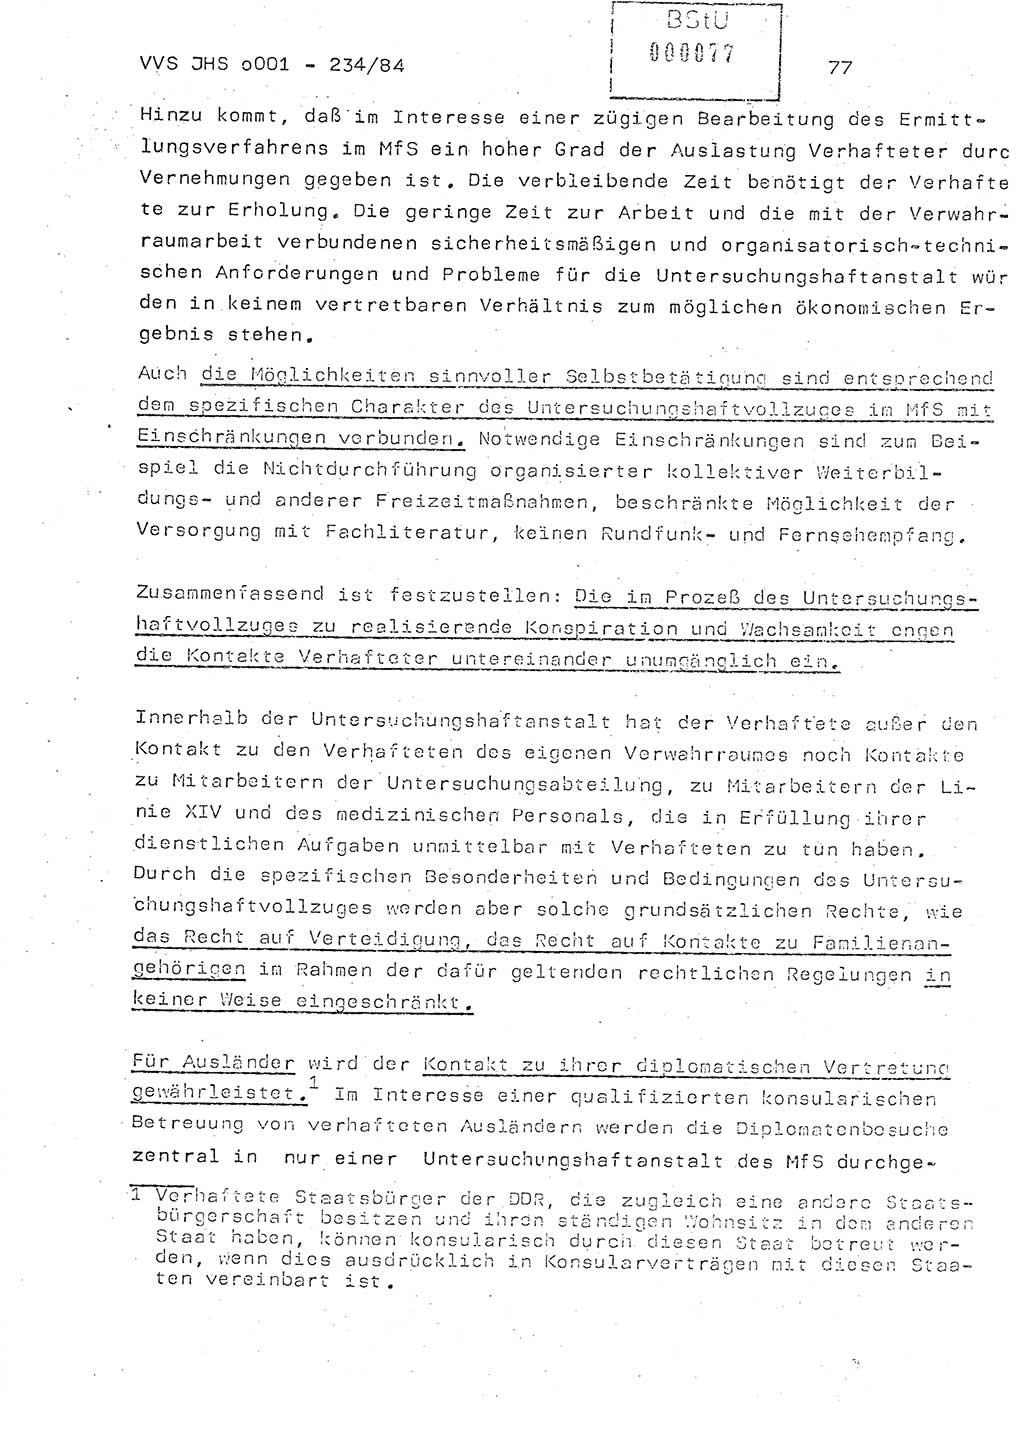 Dissertation Oberst Siegfried Rataizick (Abt. ⅩⅣ), Oberstleutnant Volkmar Heinz (Abt. ⅩⅣ), Oberstleutnant Werner Stein (HA Ⅸ), Hauptmann Heinz Conrad (JHS), Ministerium für Staatssicherheit (MfS) [Deutsche Demokratische Republik (DDR)], Juristische Hochschule (JHS), Vertrauliche Verschlußsache (VVS) o001-234/84, Potsdam 1984, Seite 77 (Diss. MfS DDR JHS VVS o001-234/84 1984, S. 77)